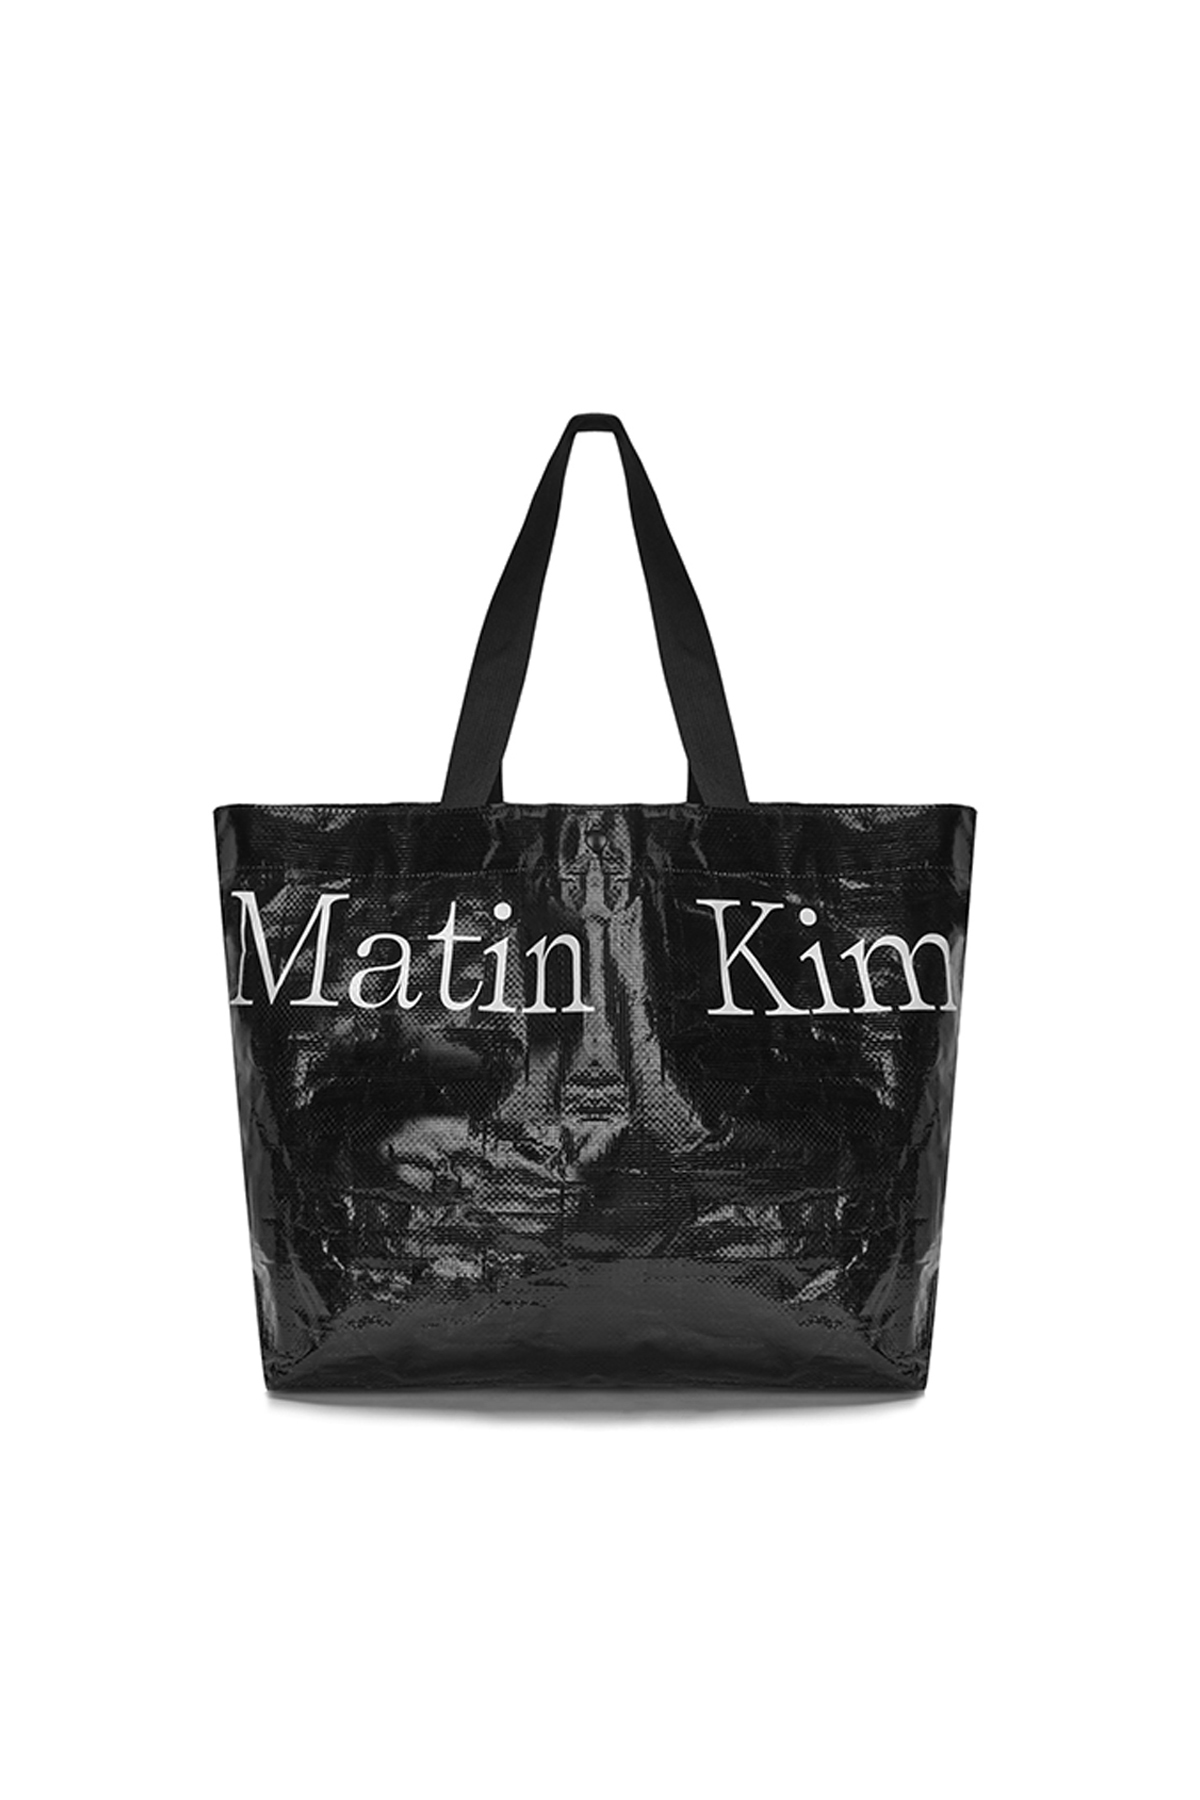 MATIN TARPAULIN SHOPPER BAG IN BLACK